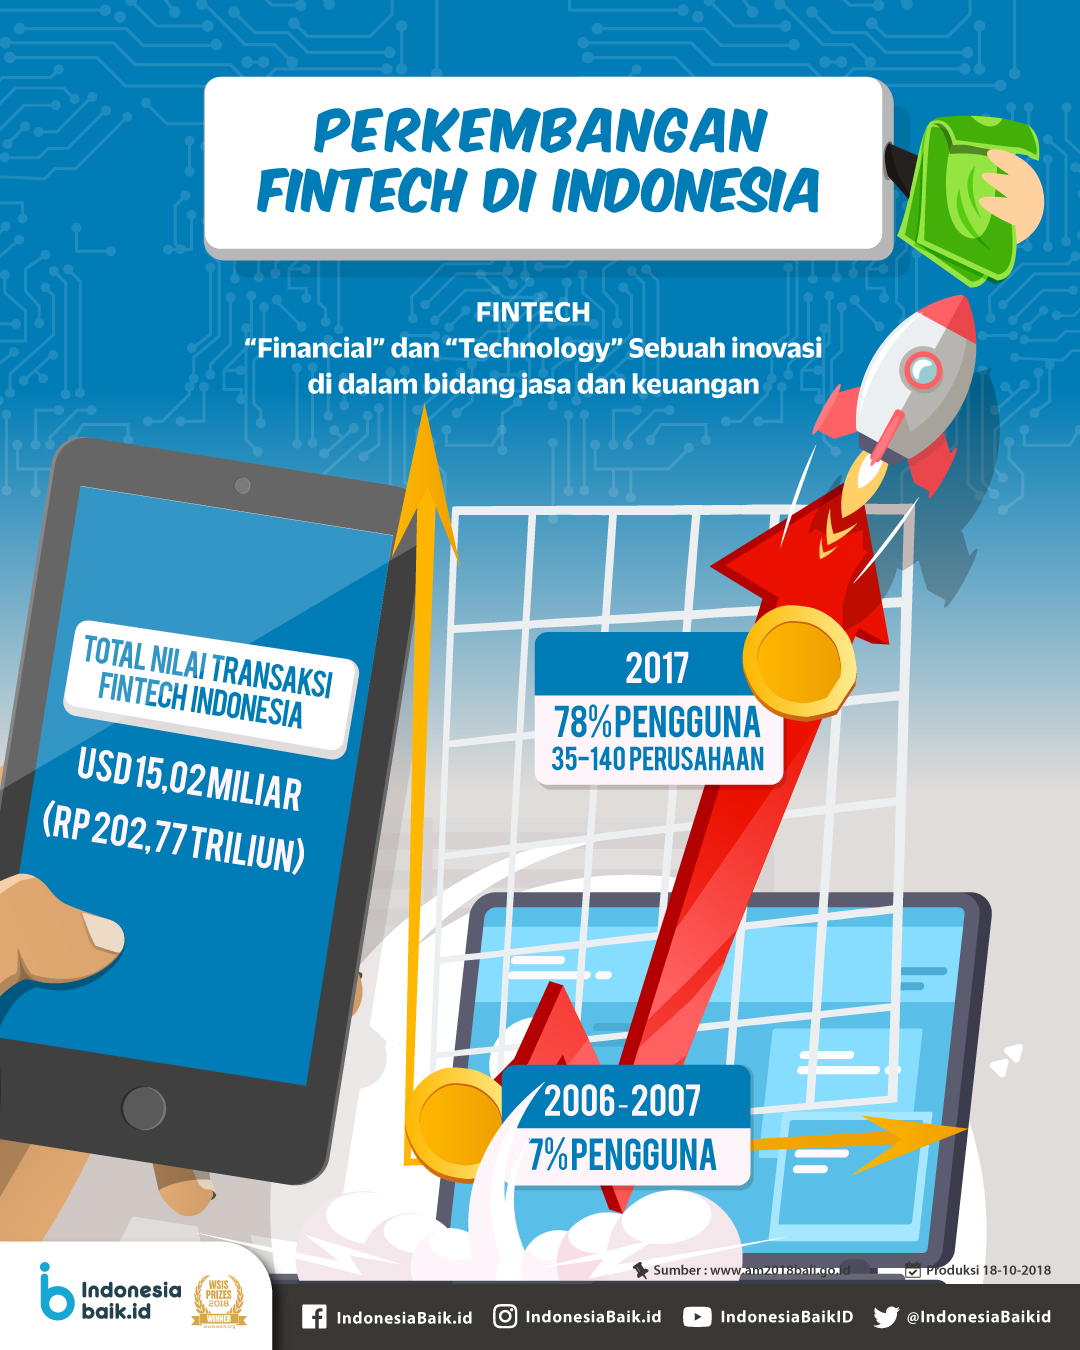 Perkembangan Startup FinTech di Indonesia yang Menjanjikan